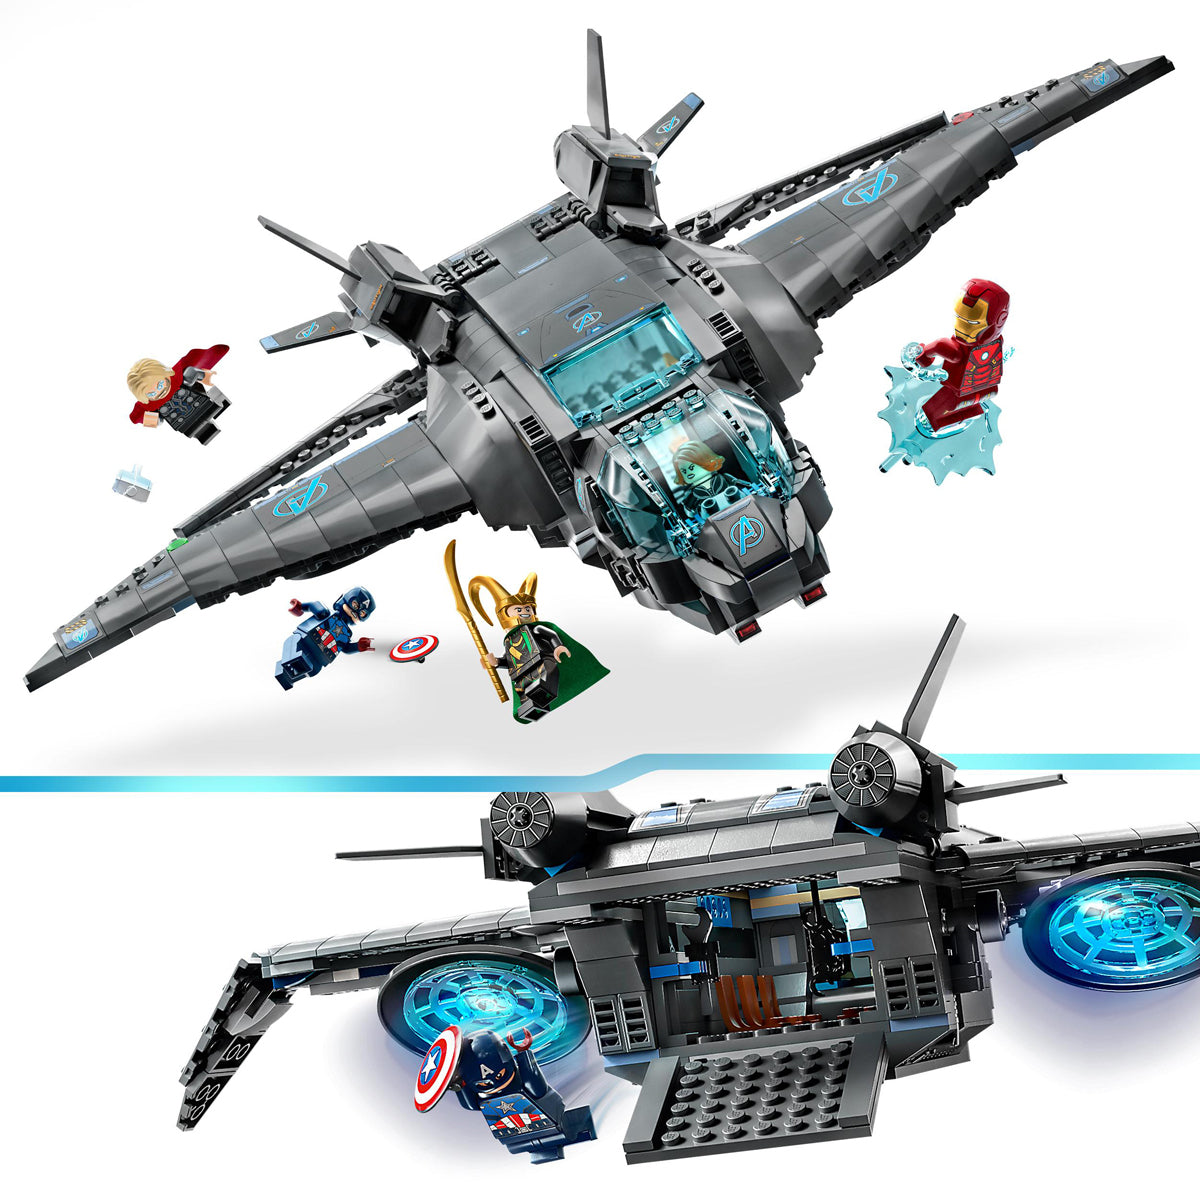 LEGO Marvel - The Avengers Quinjet 76248